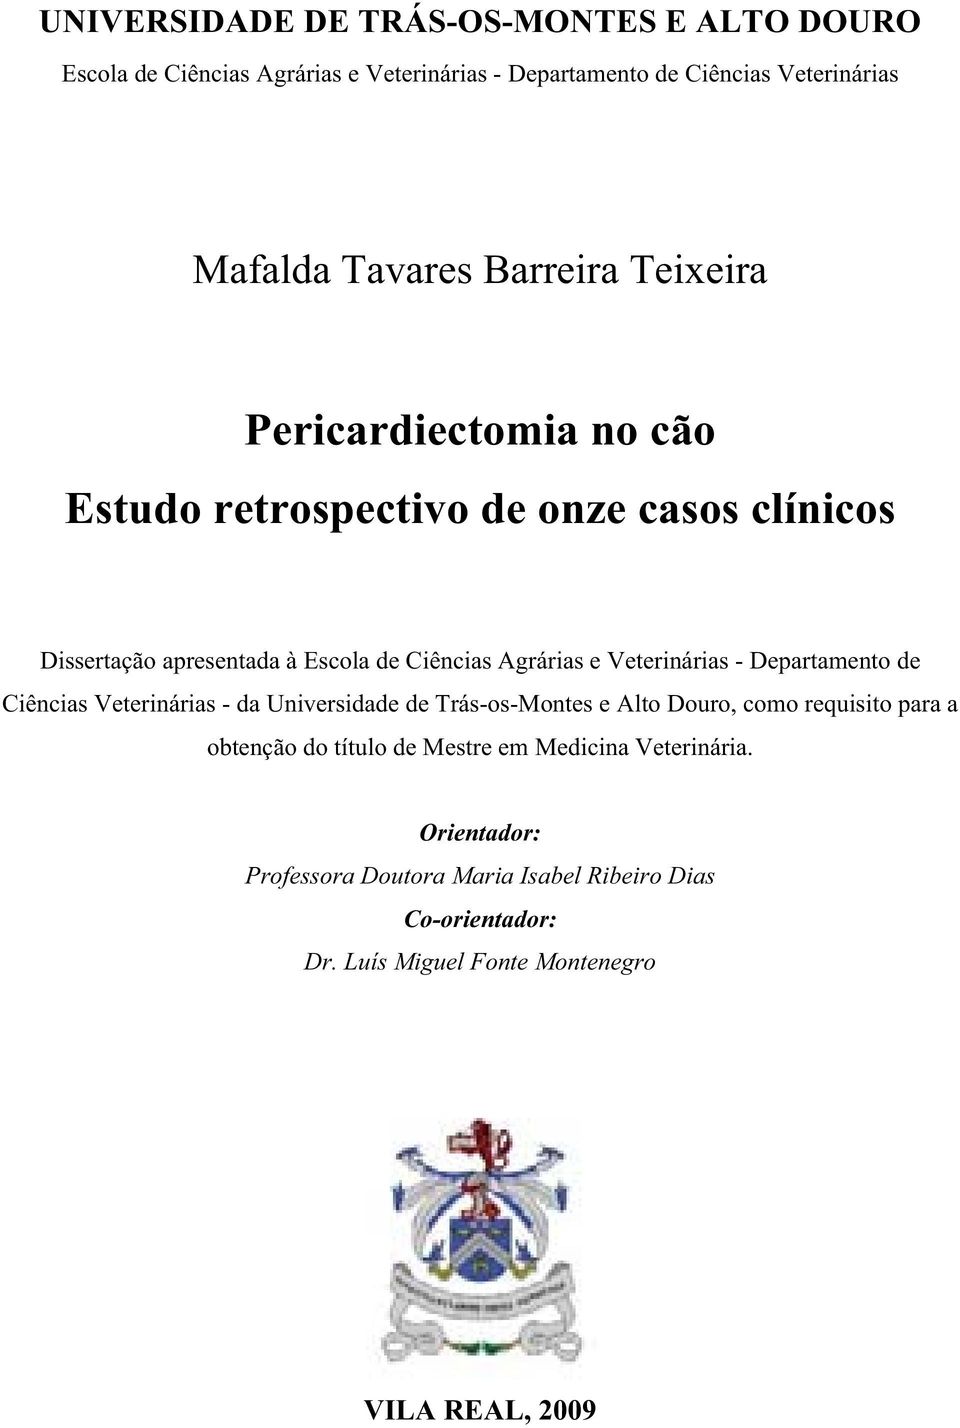 Veterinárias - Departamento de Ciências Veterinárias - da Universidade de Trás-os-Montes e Alto Douro, como requisito para a obtenção do título